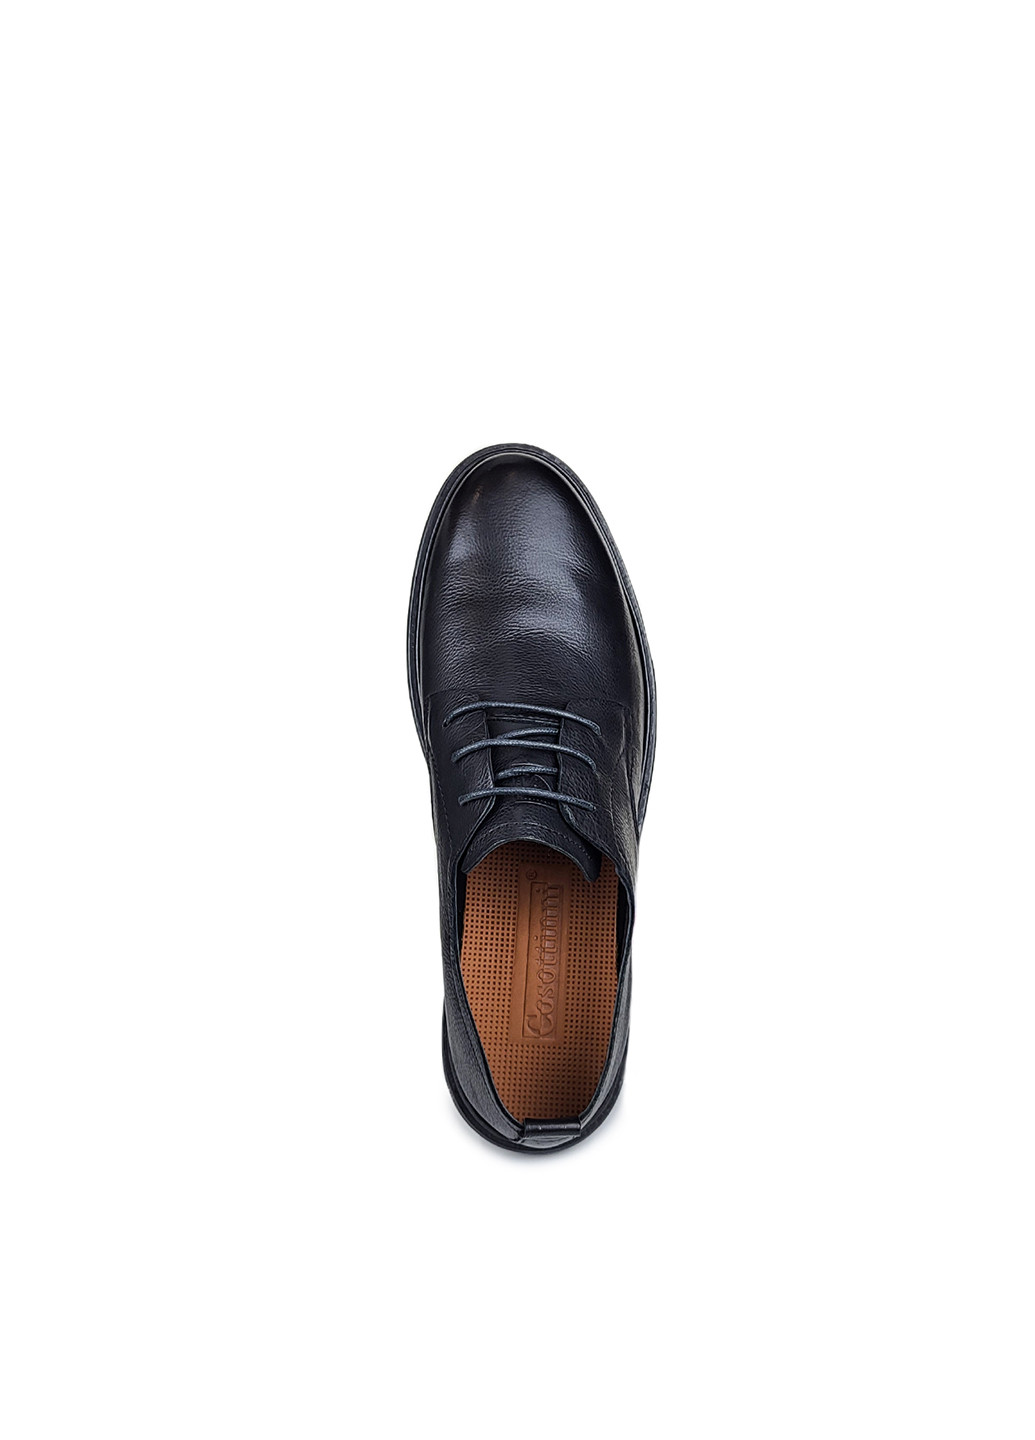 Черные повседневные повседневные туфли мужские на шнурках демисезон,,2056ab-0107,39 Cosottinni на шнурках